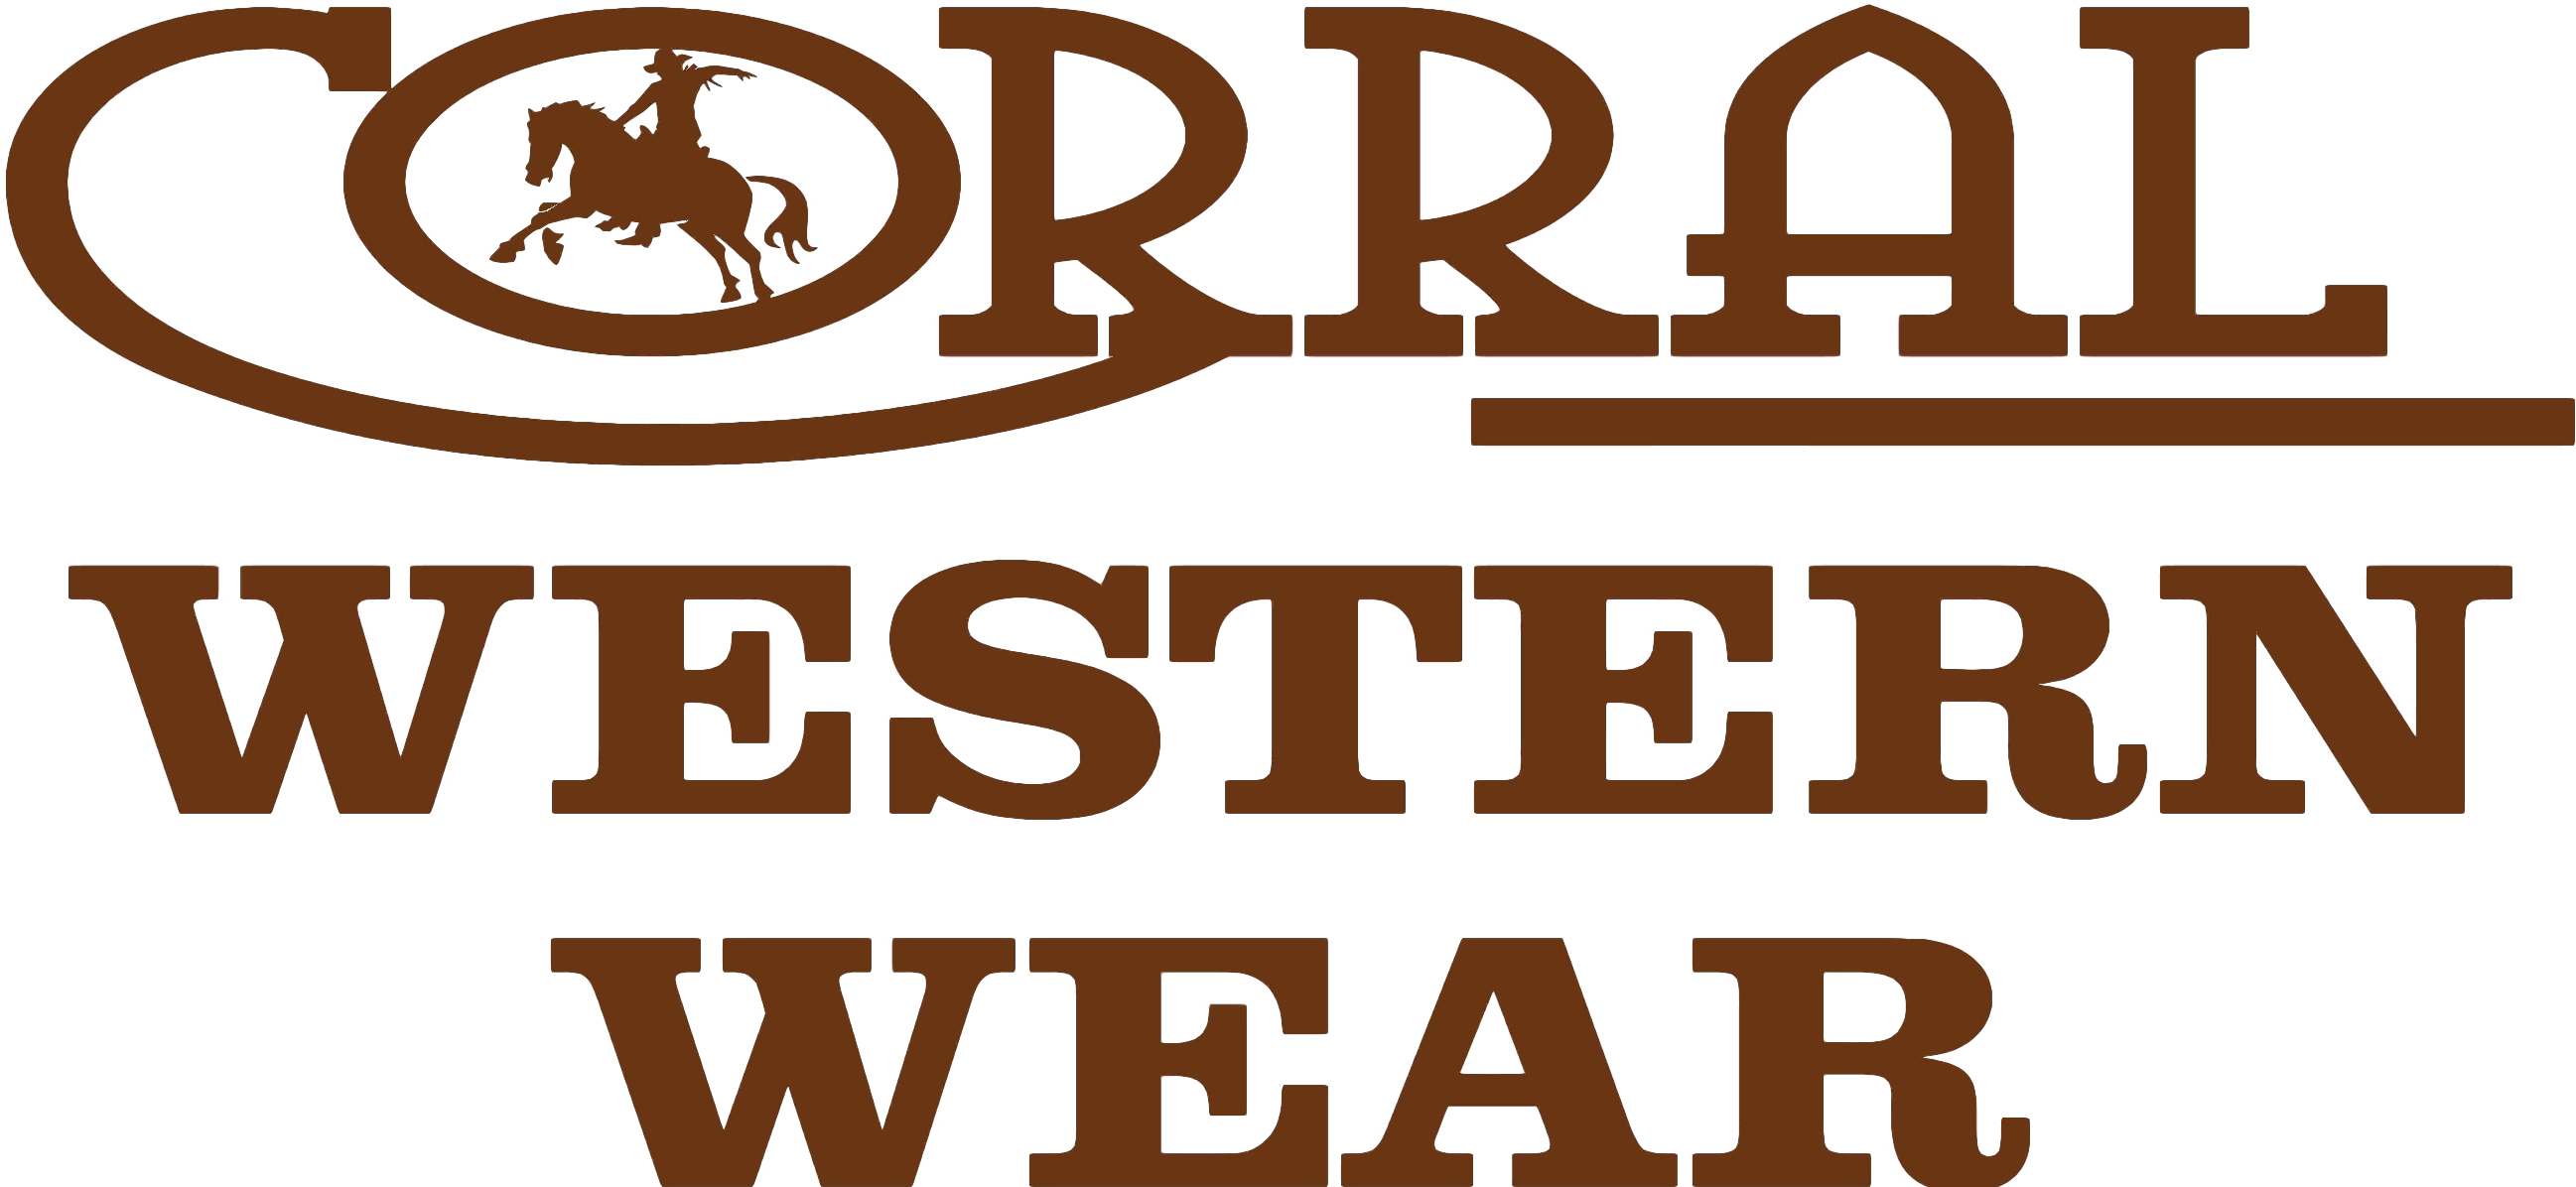 Corral Western Wear - Corral Western Wear